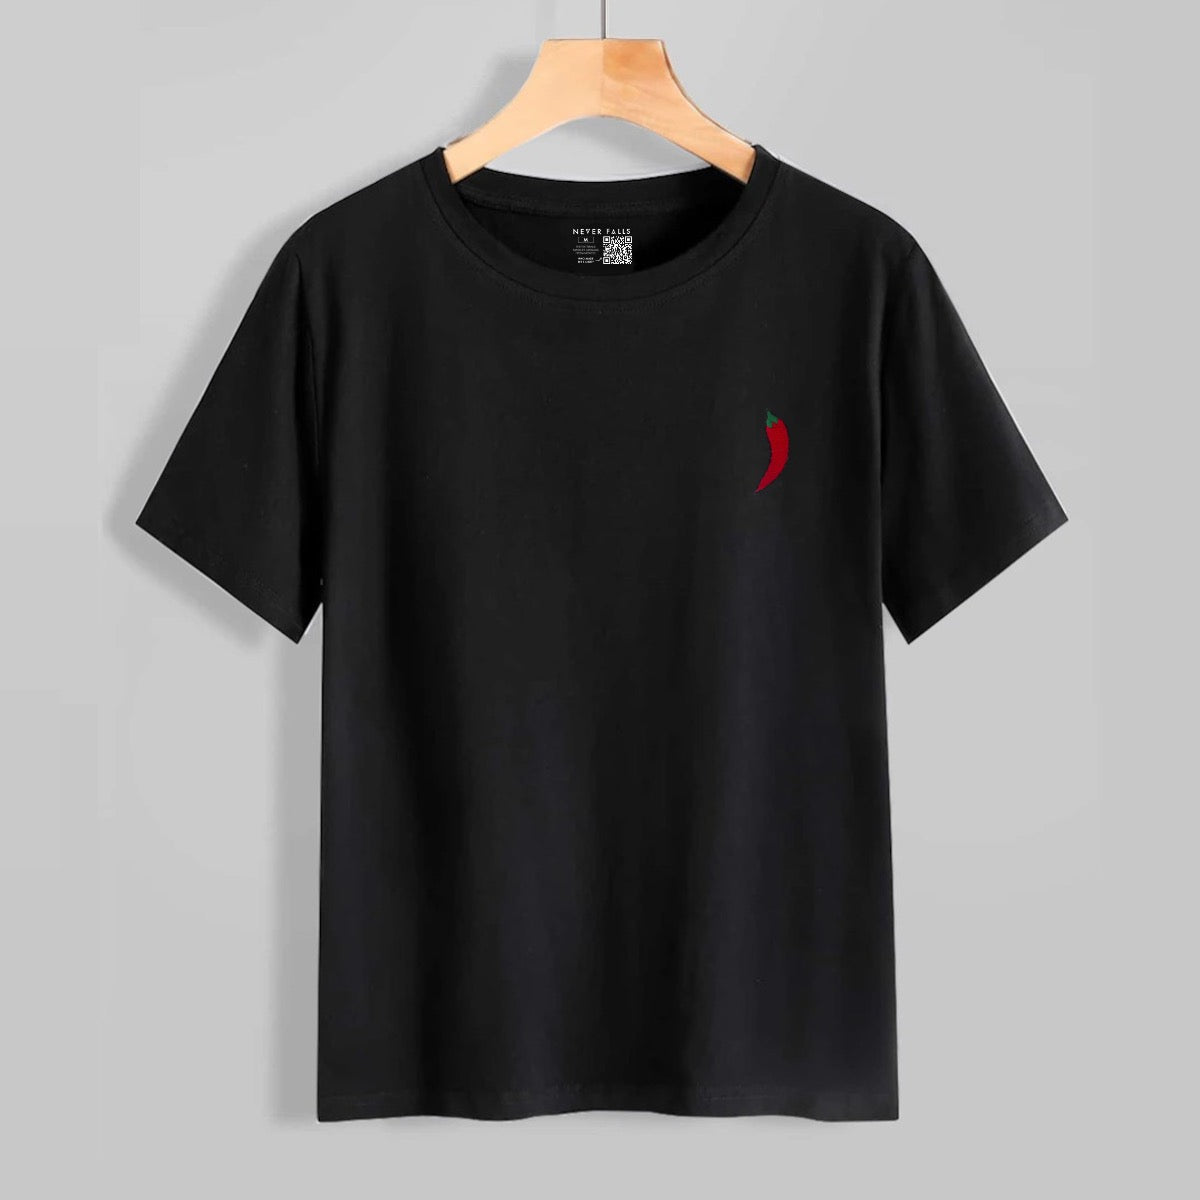 Chili T-Shirt